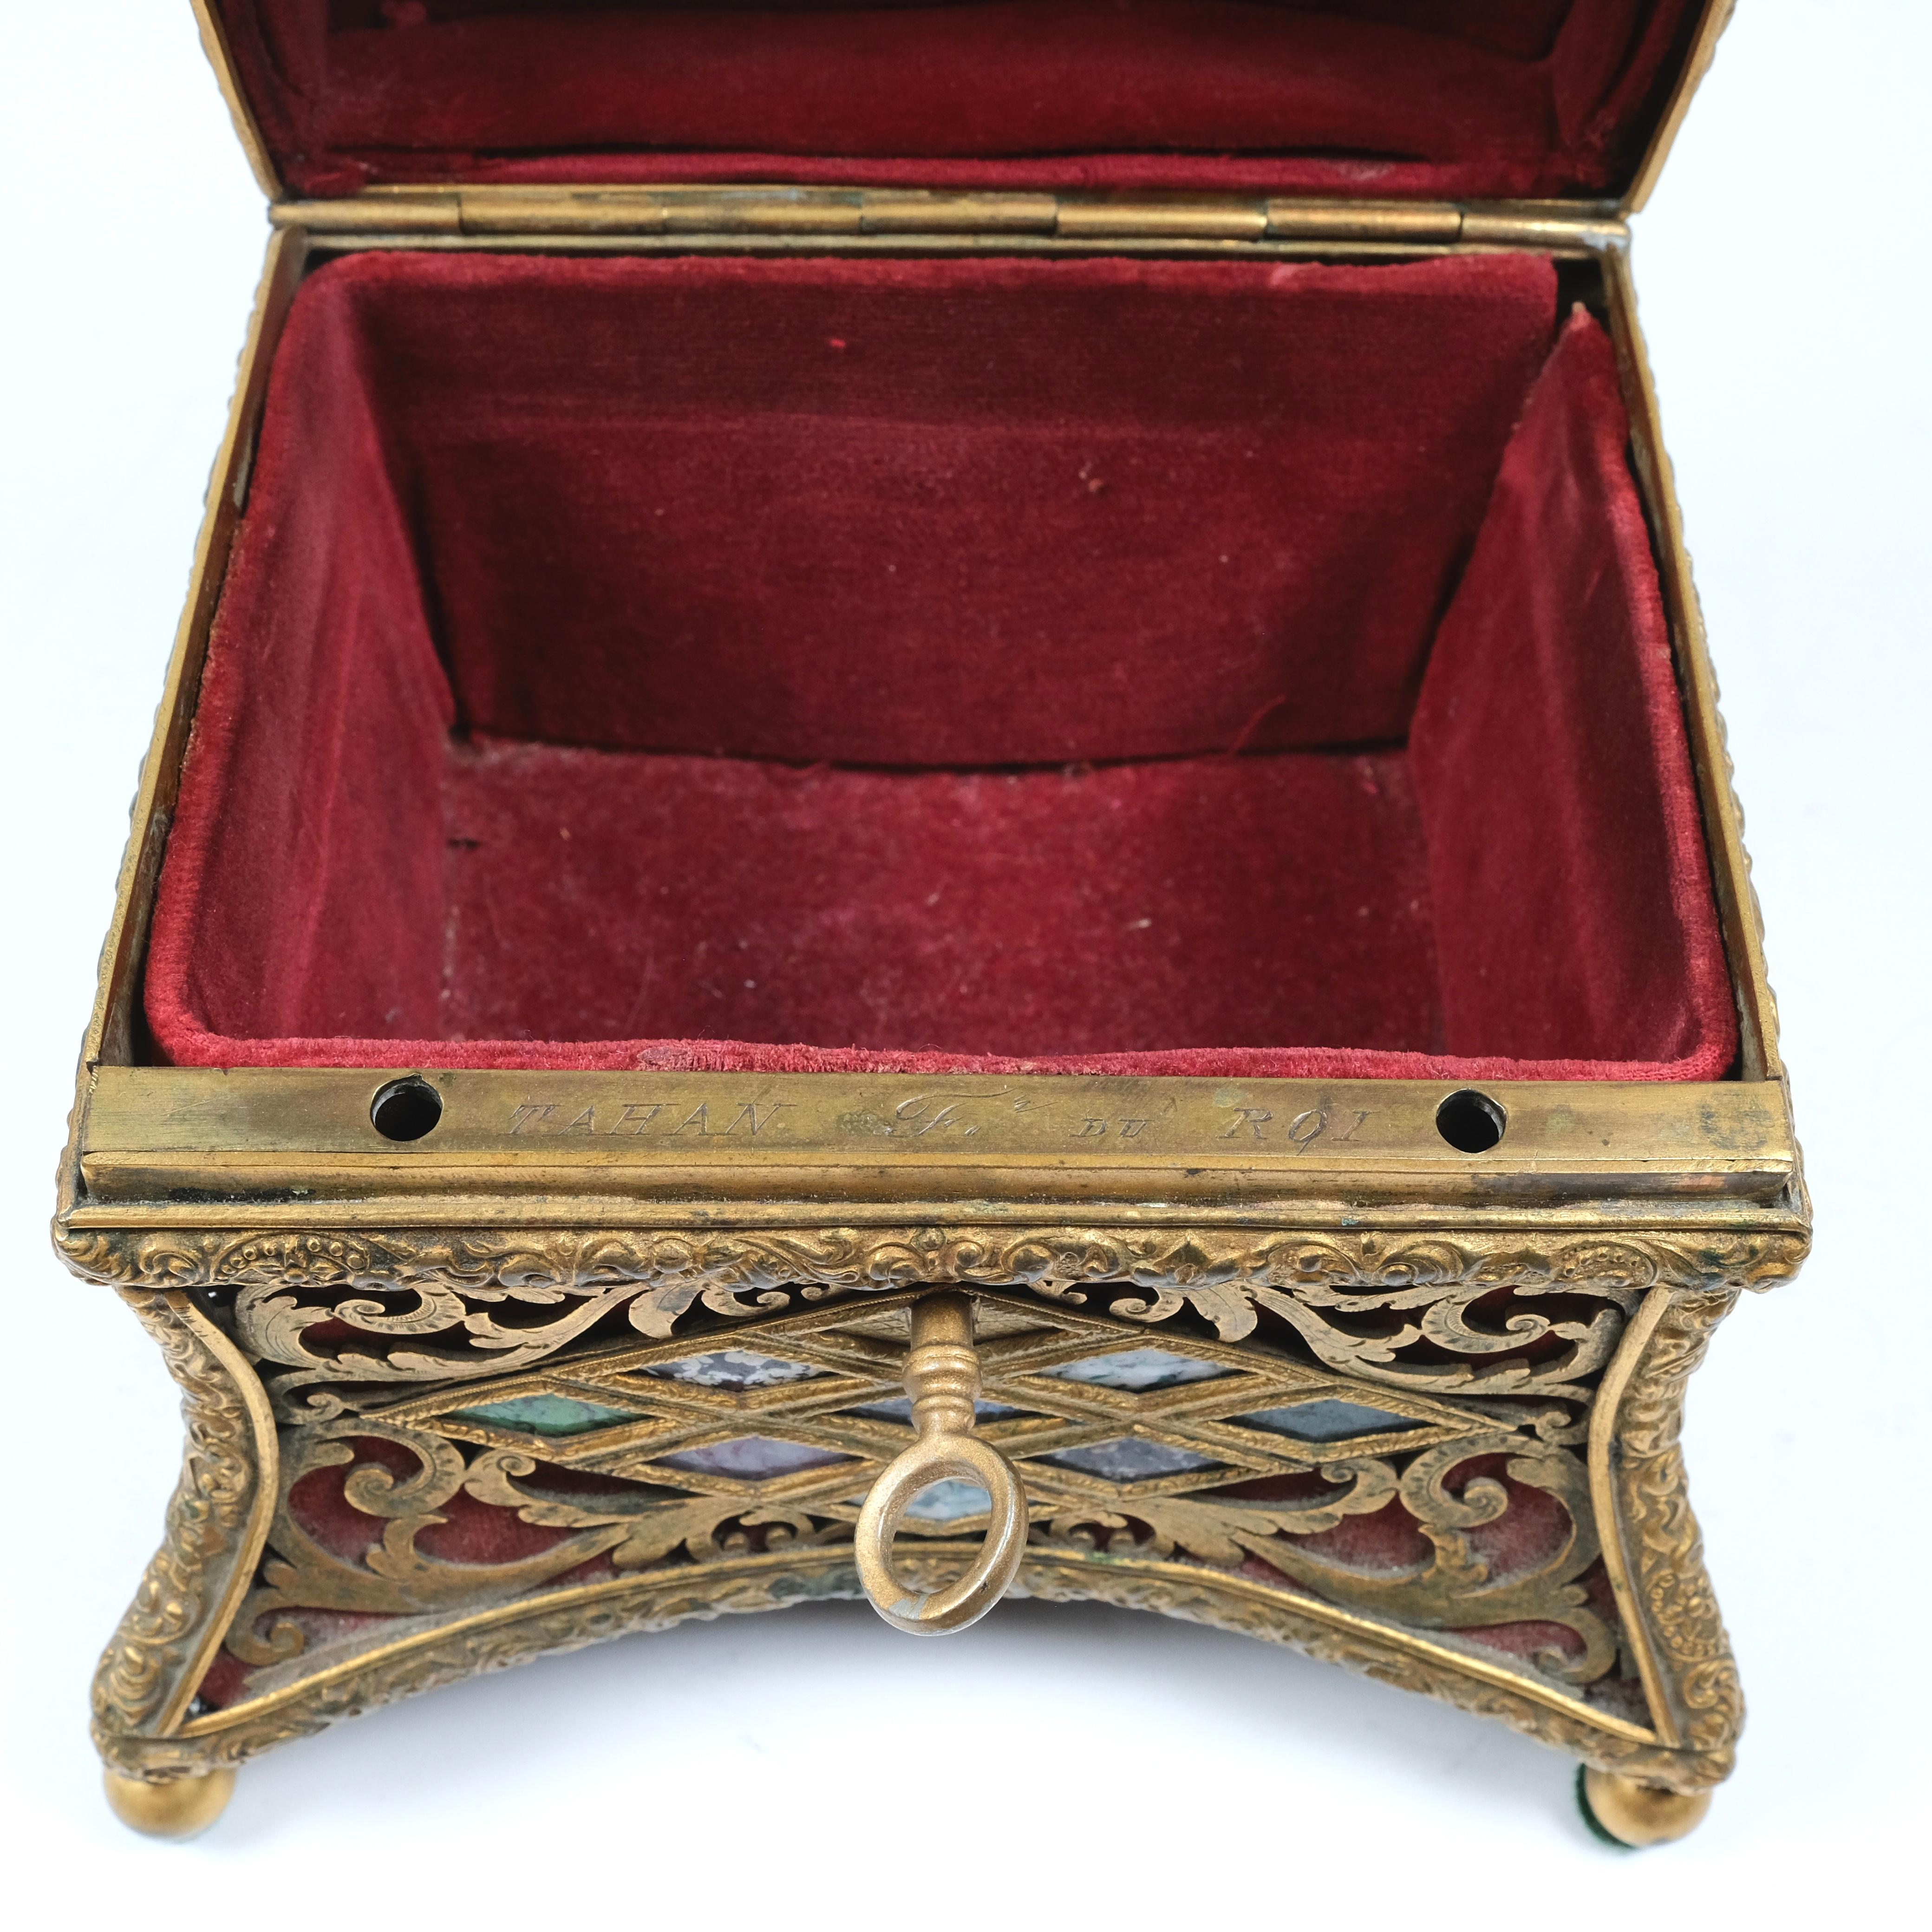 Bronze doré avec un spécimen de marbre inséré. Intérieur original en velours rouge.